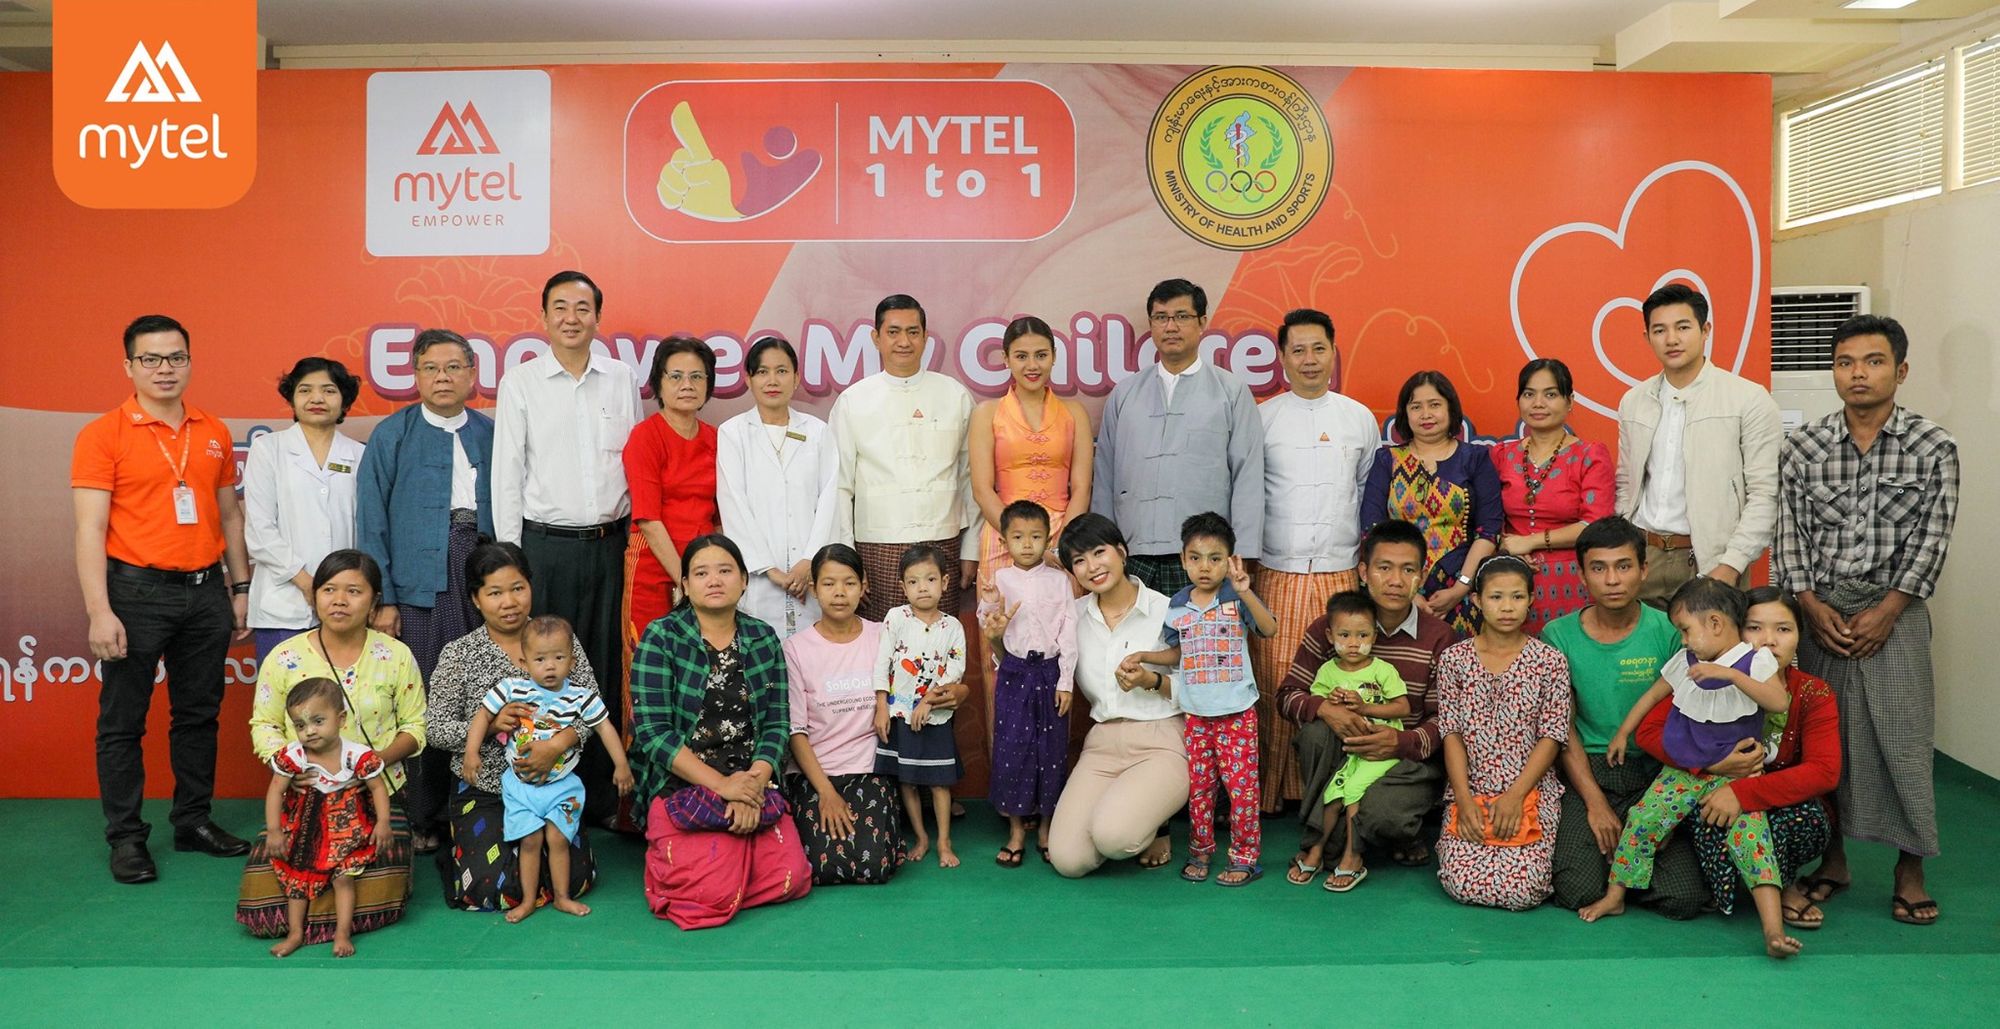 Mytel မှ ရန်ကင်းကလေးဆေးရုံရှိ မွေးရာပါနှလုံးရောဂါဝေဒနာရှင် ကလေးငယ်များကို လှူဒါန်း